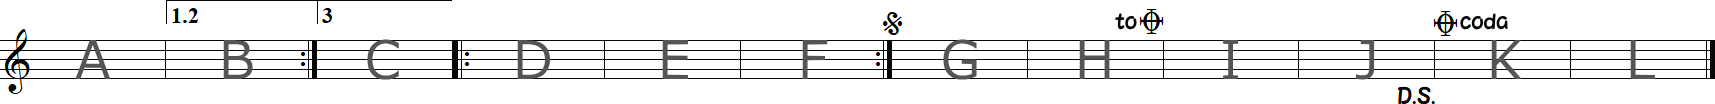 反復記号の練習12小節の譜面